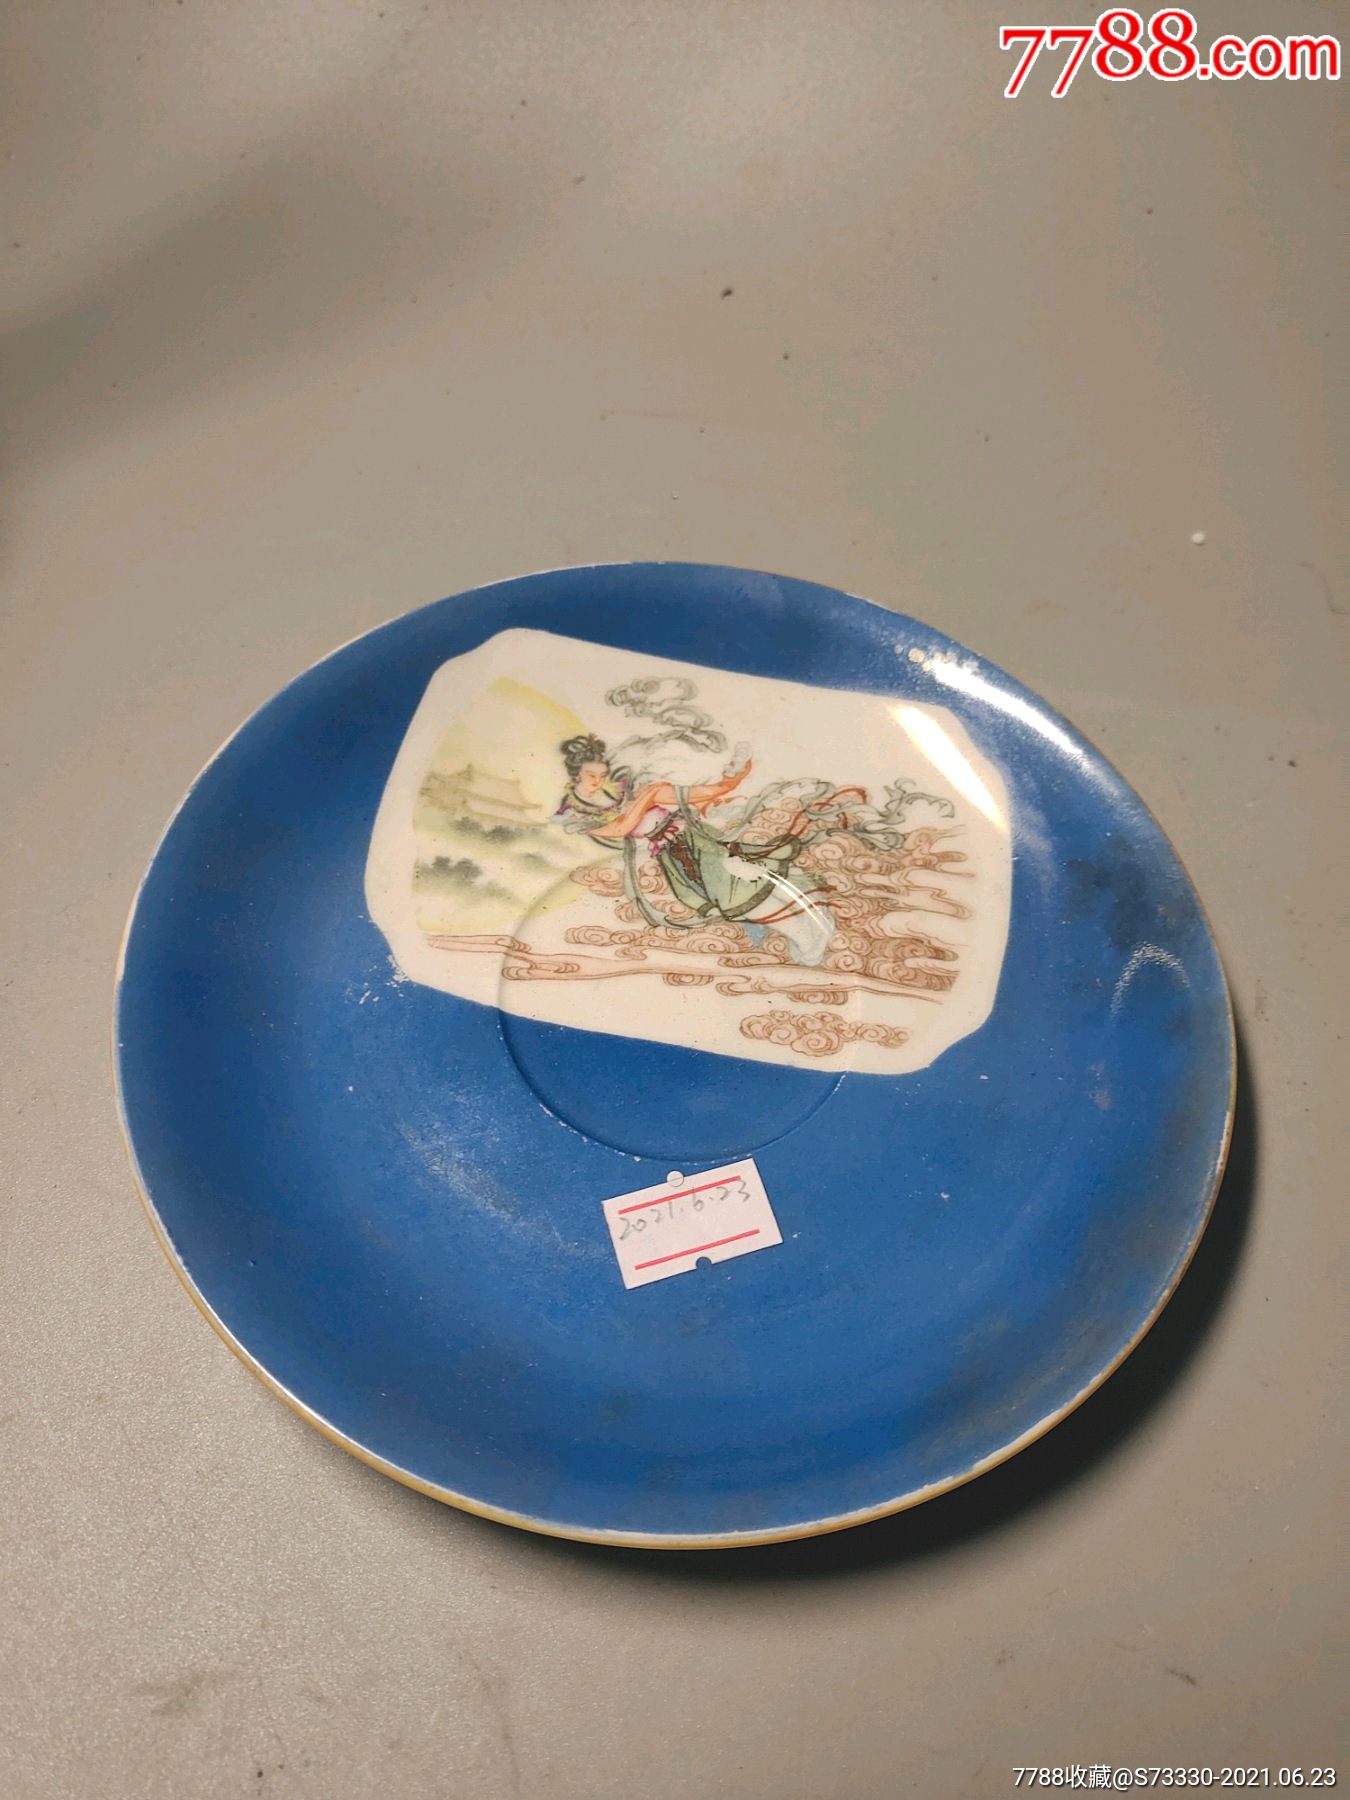 创汇期,唐山五瓷,嫦娥奔月茶碟-价格:15元-se81009401